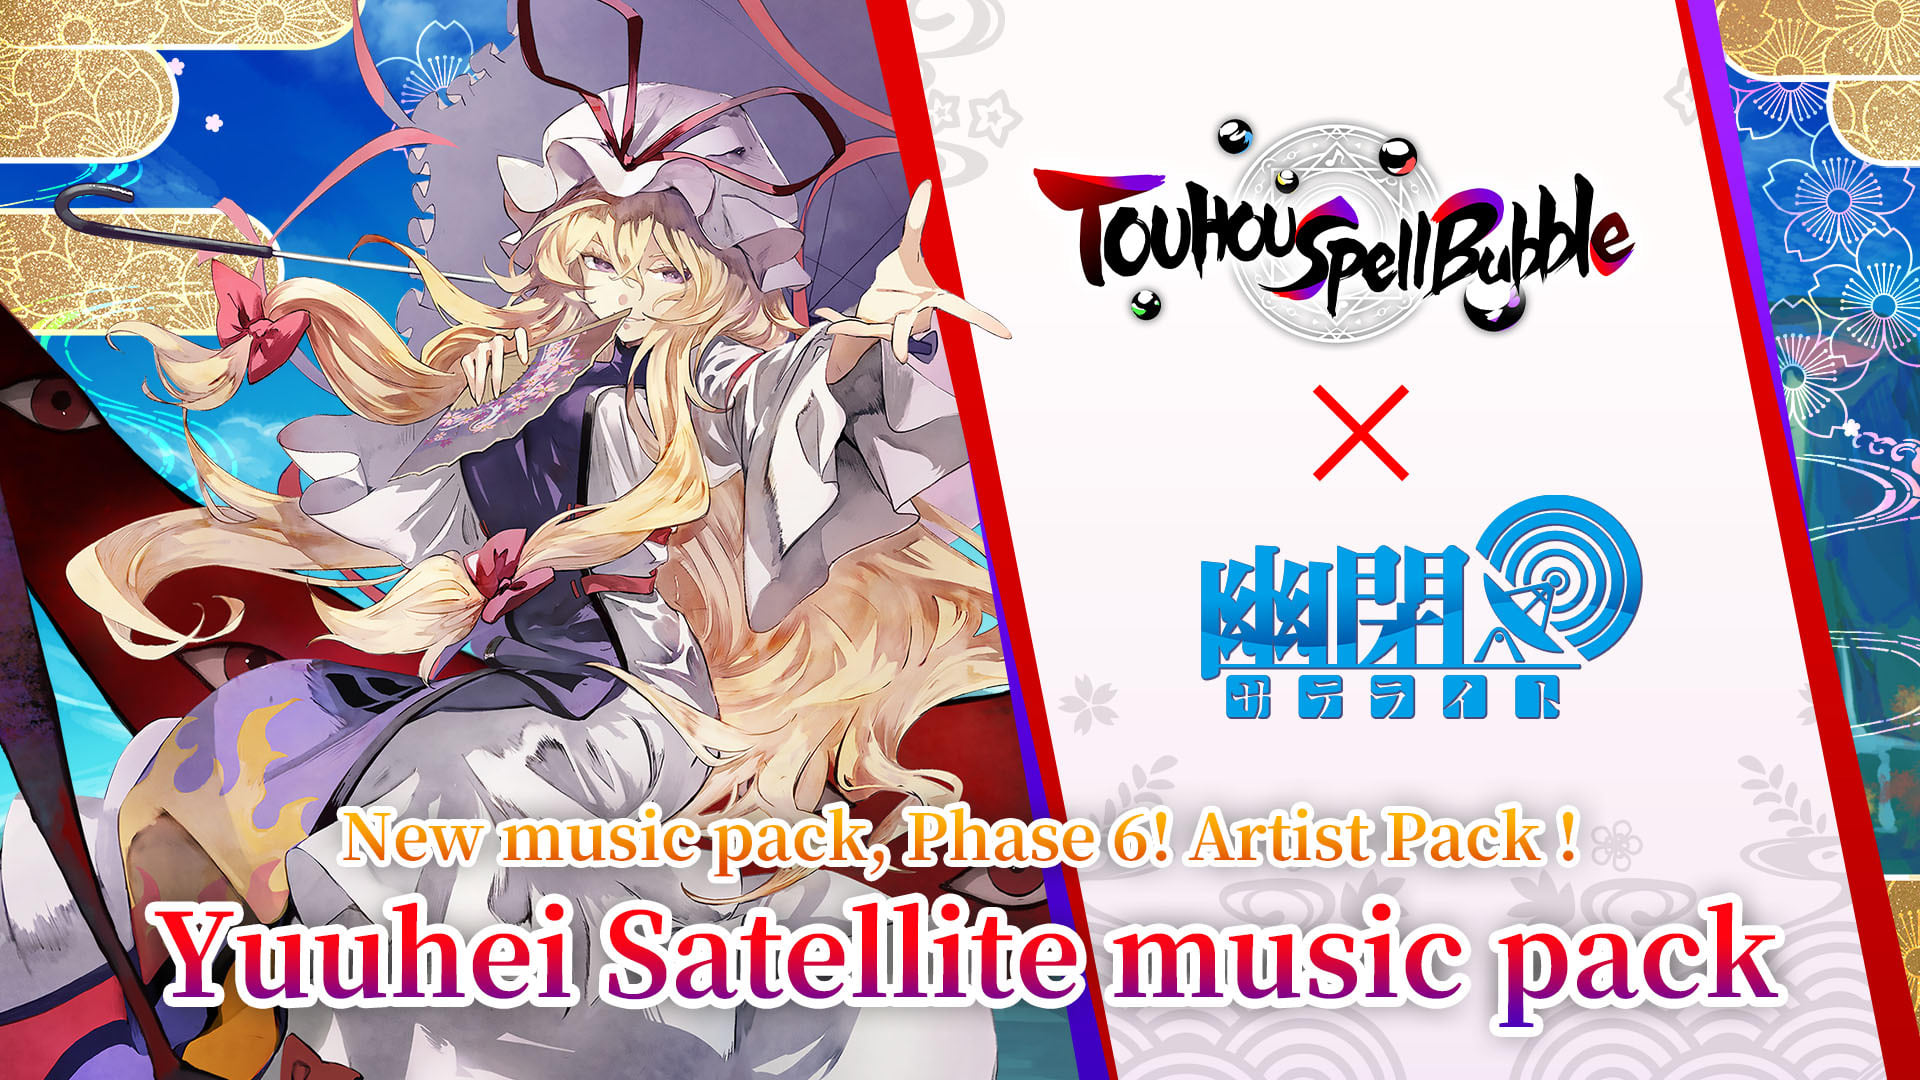 Yuuhei Satellite Music Pack